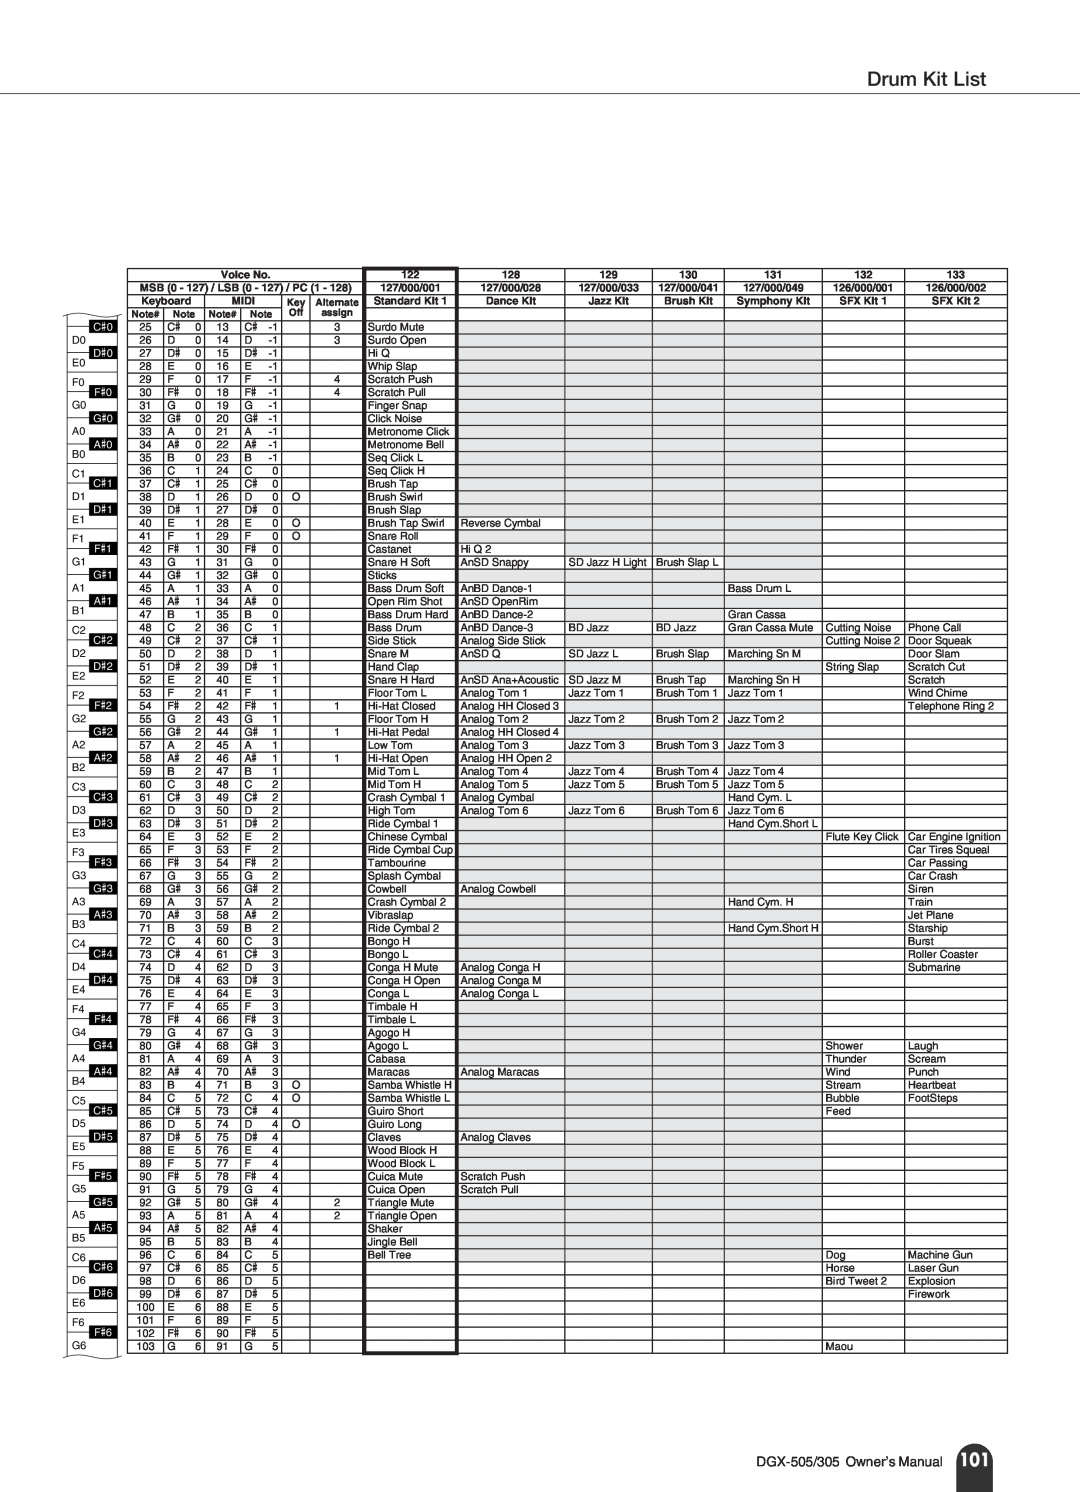 Yamaha DGX-305 manual Drum Kit List, DGX-505/305 Owner’s Manual 